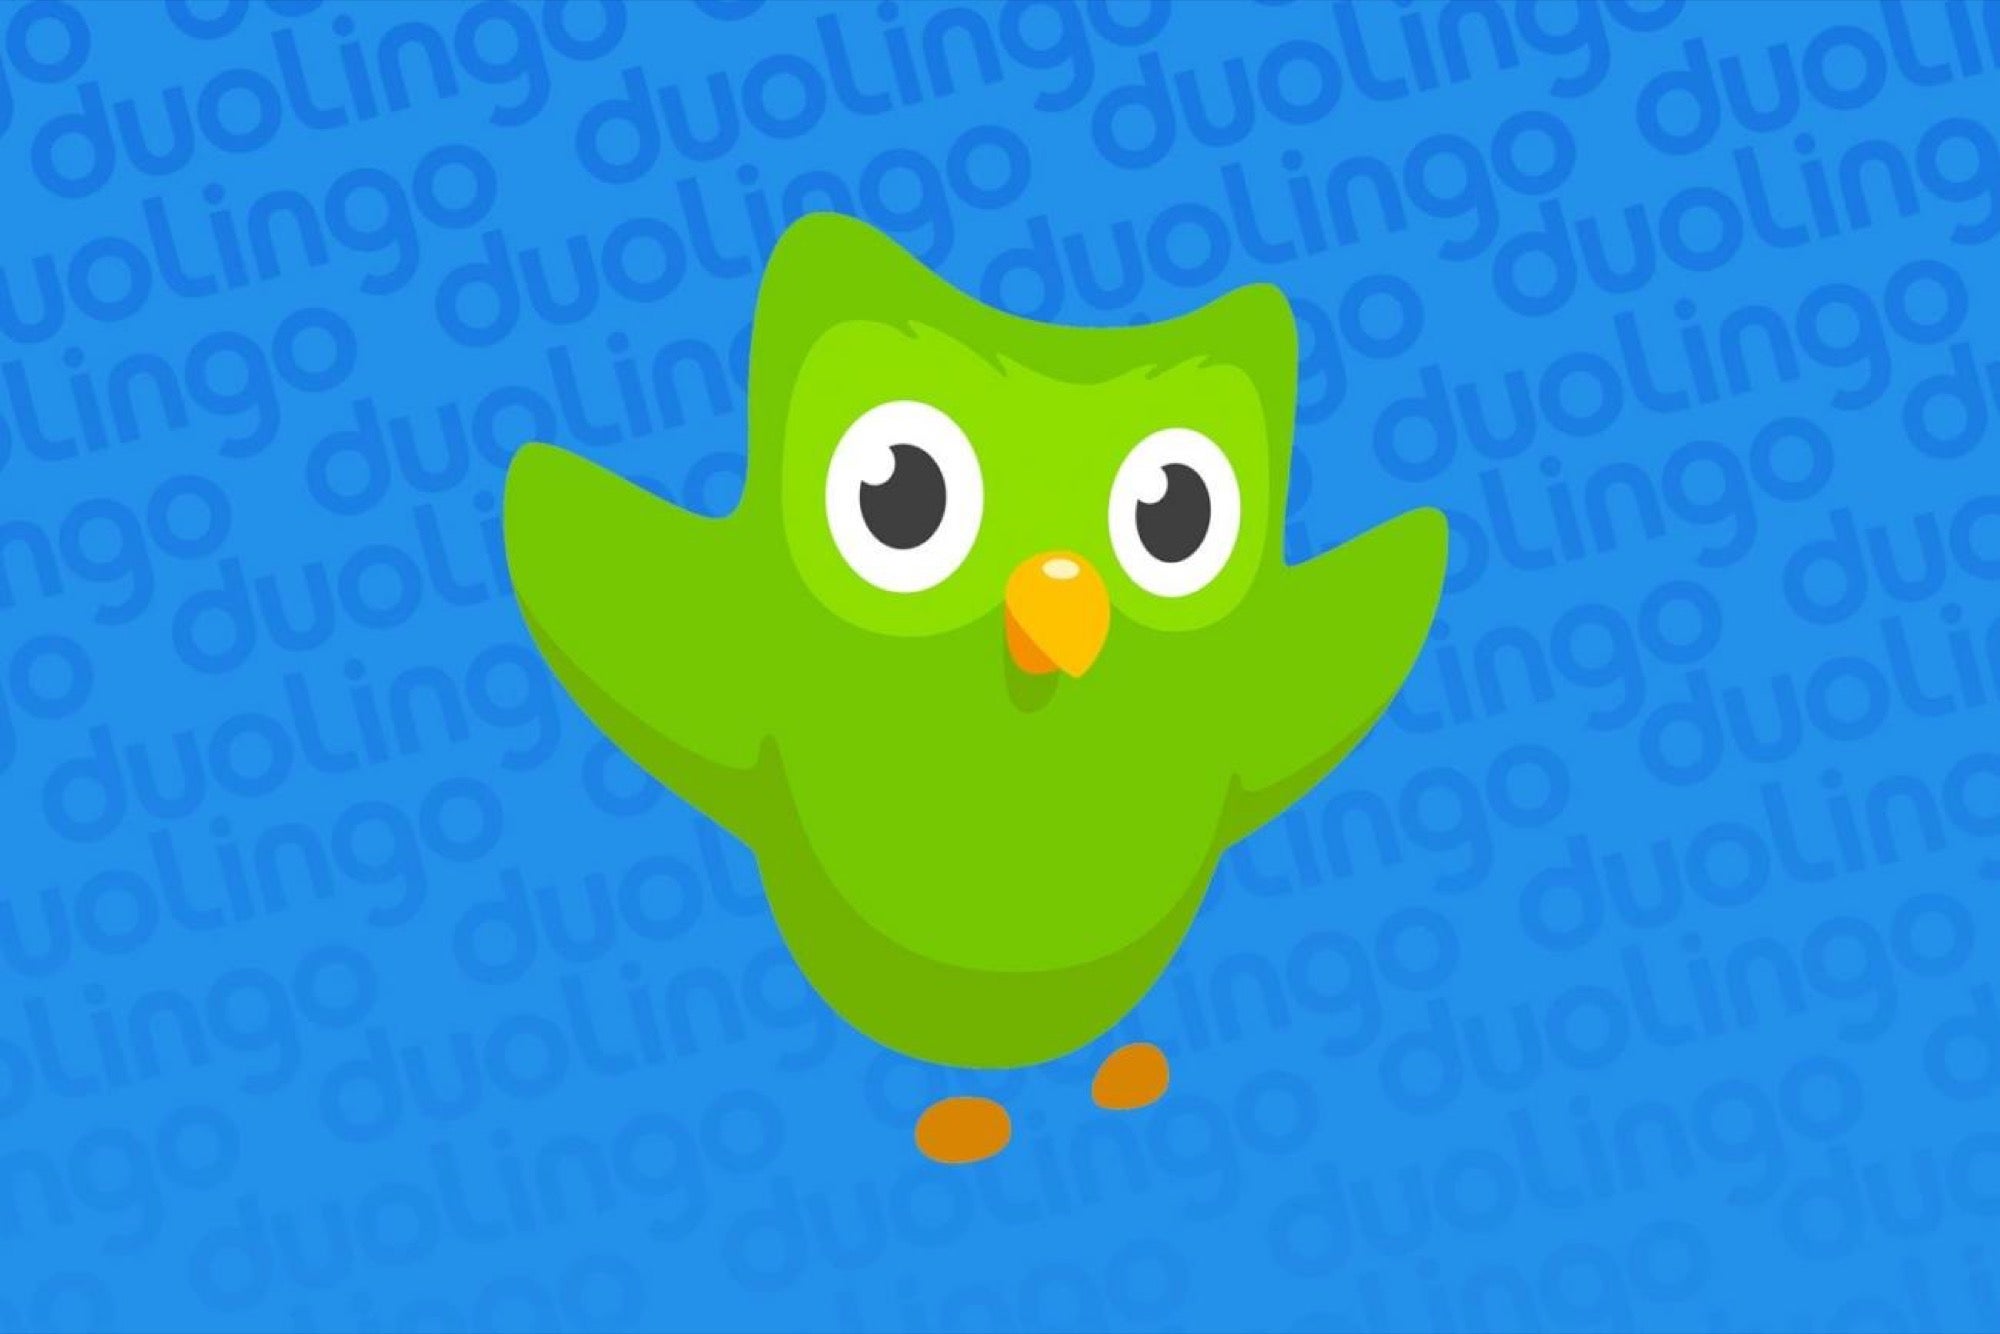 Duolingo, the Chart